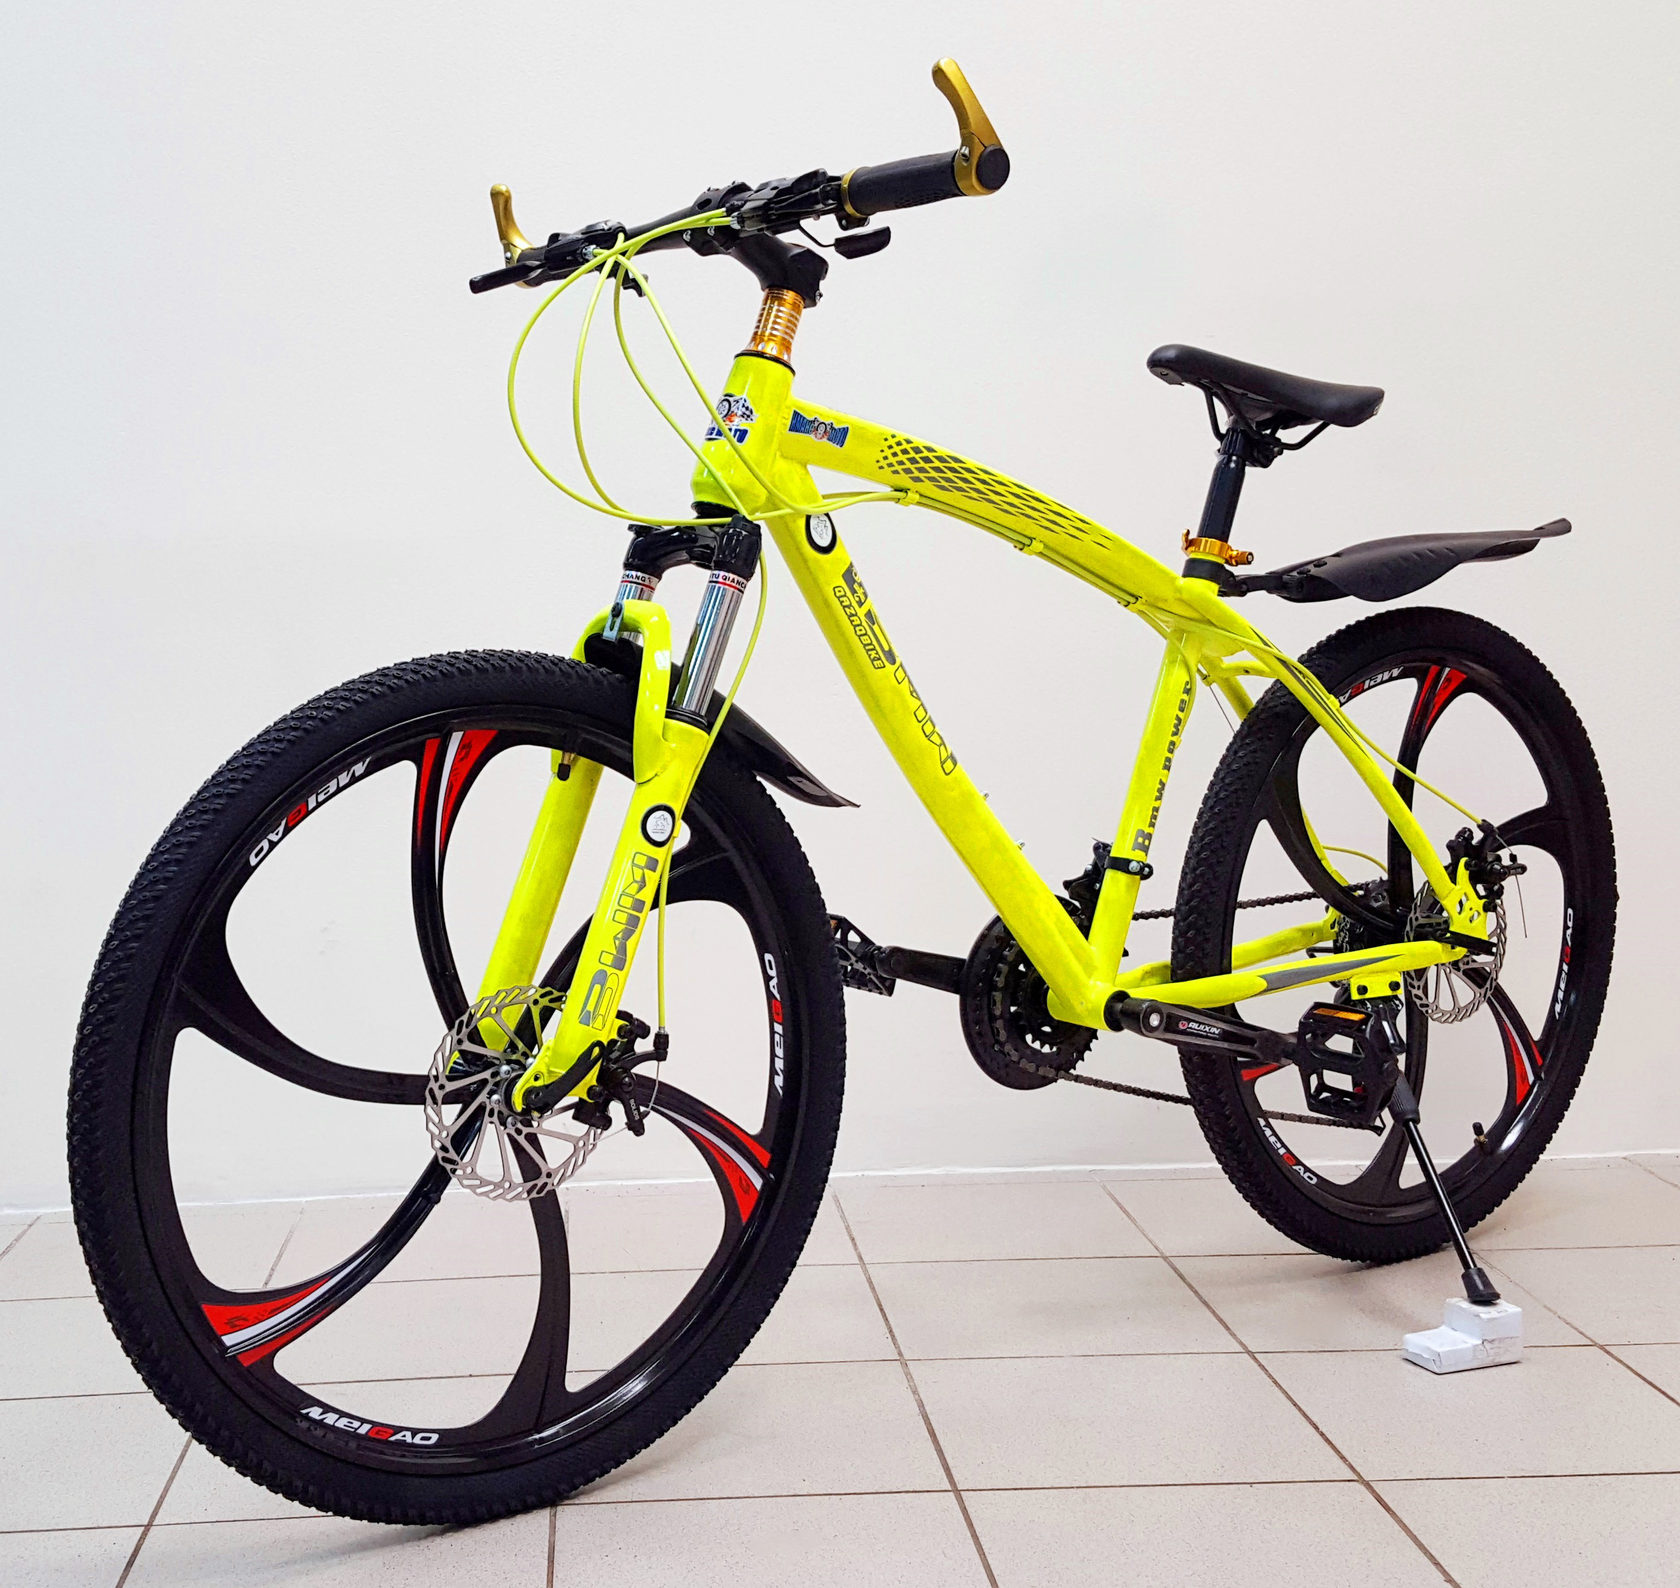 Купить велосипед в великом новгороде. Горный велосипед БМВ. Велосипед БМВ желтый. Велосипед БМВ на литых дисках желтый. Велосипед БМВ 24 скорости.